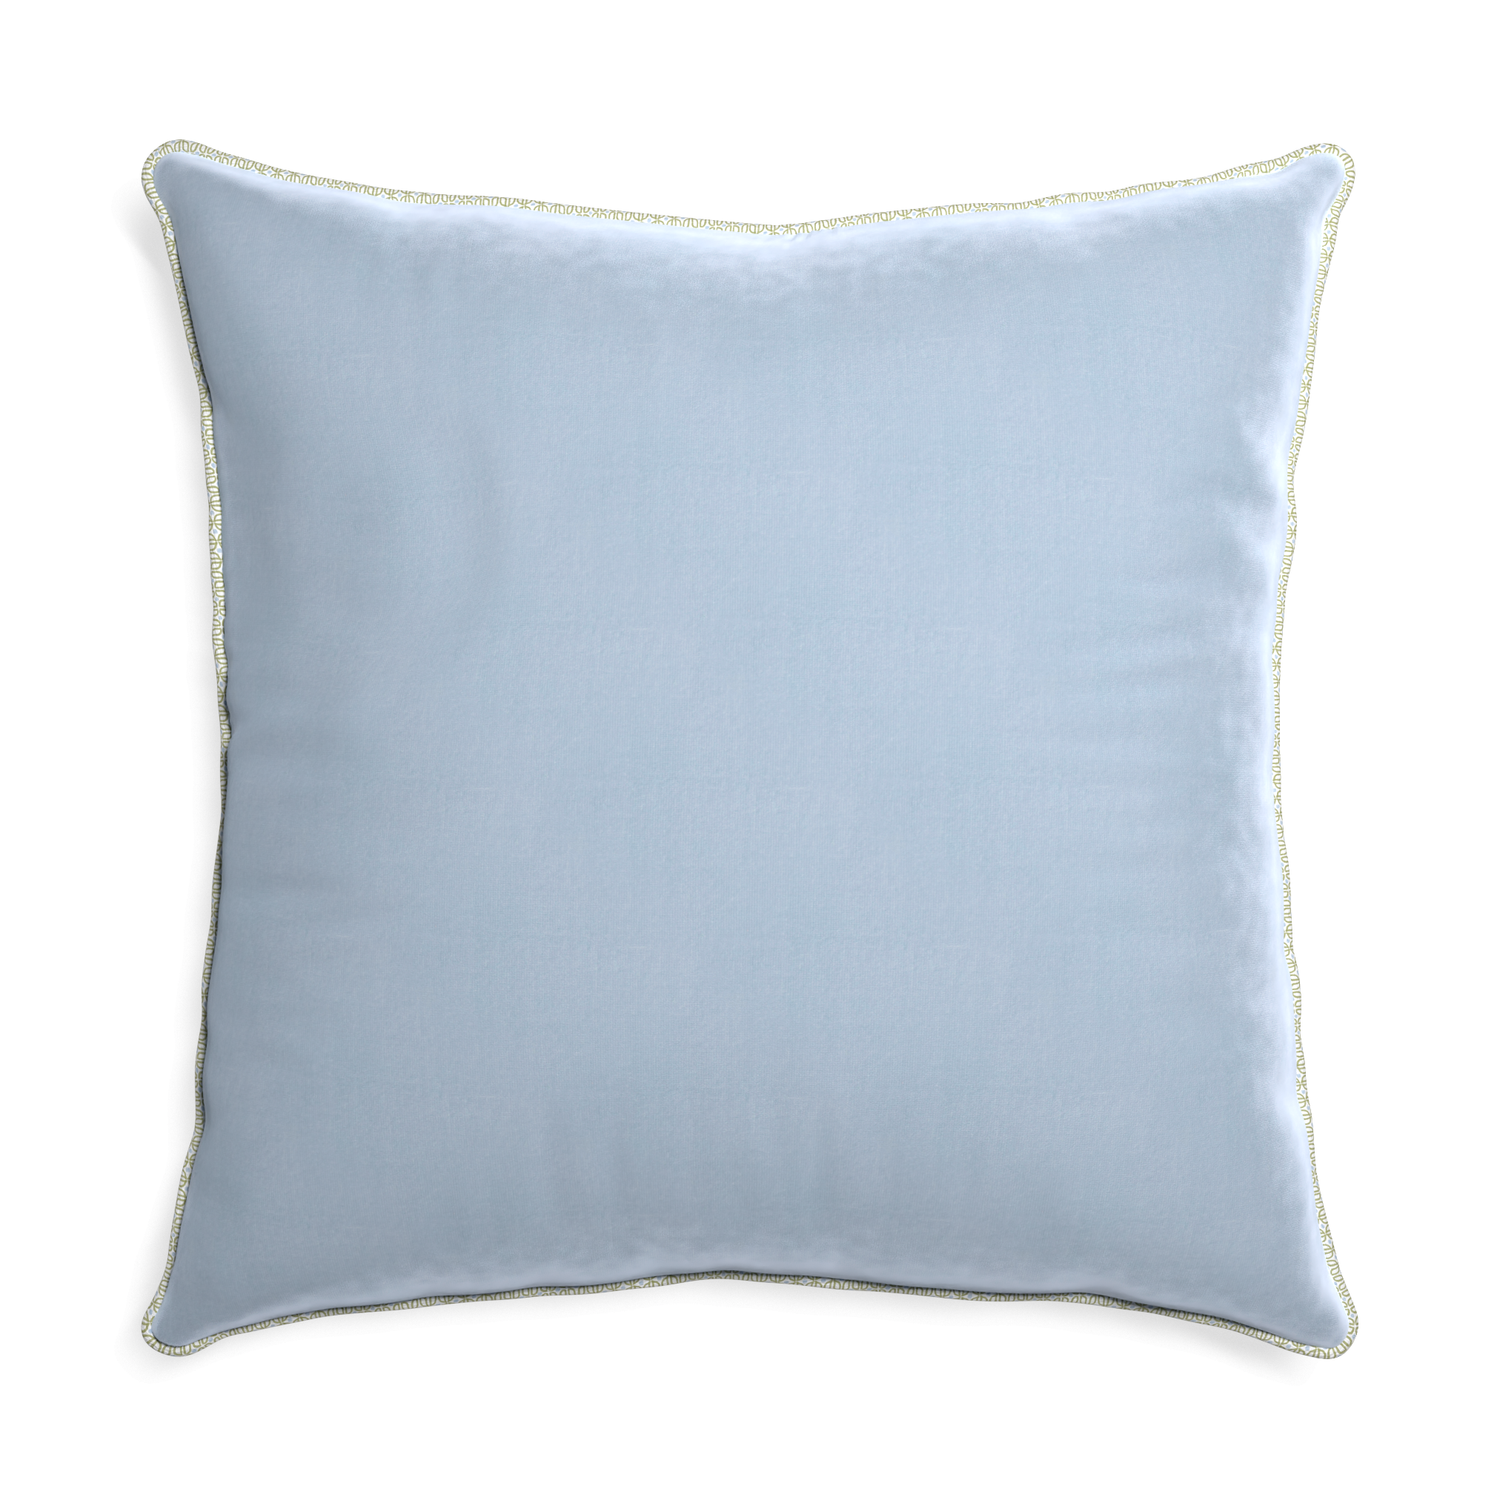 Euro-sham sky velvet custom pillow with l piping on white background